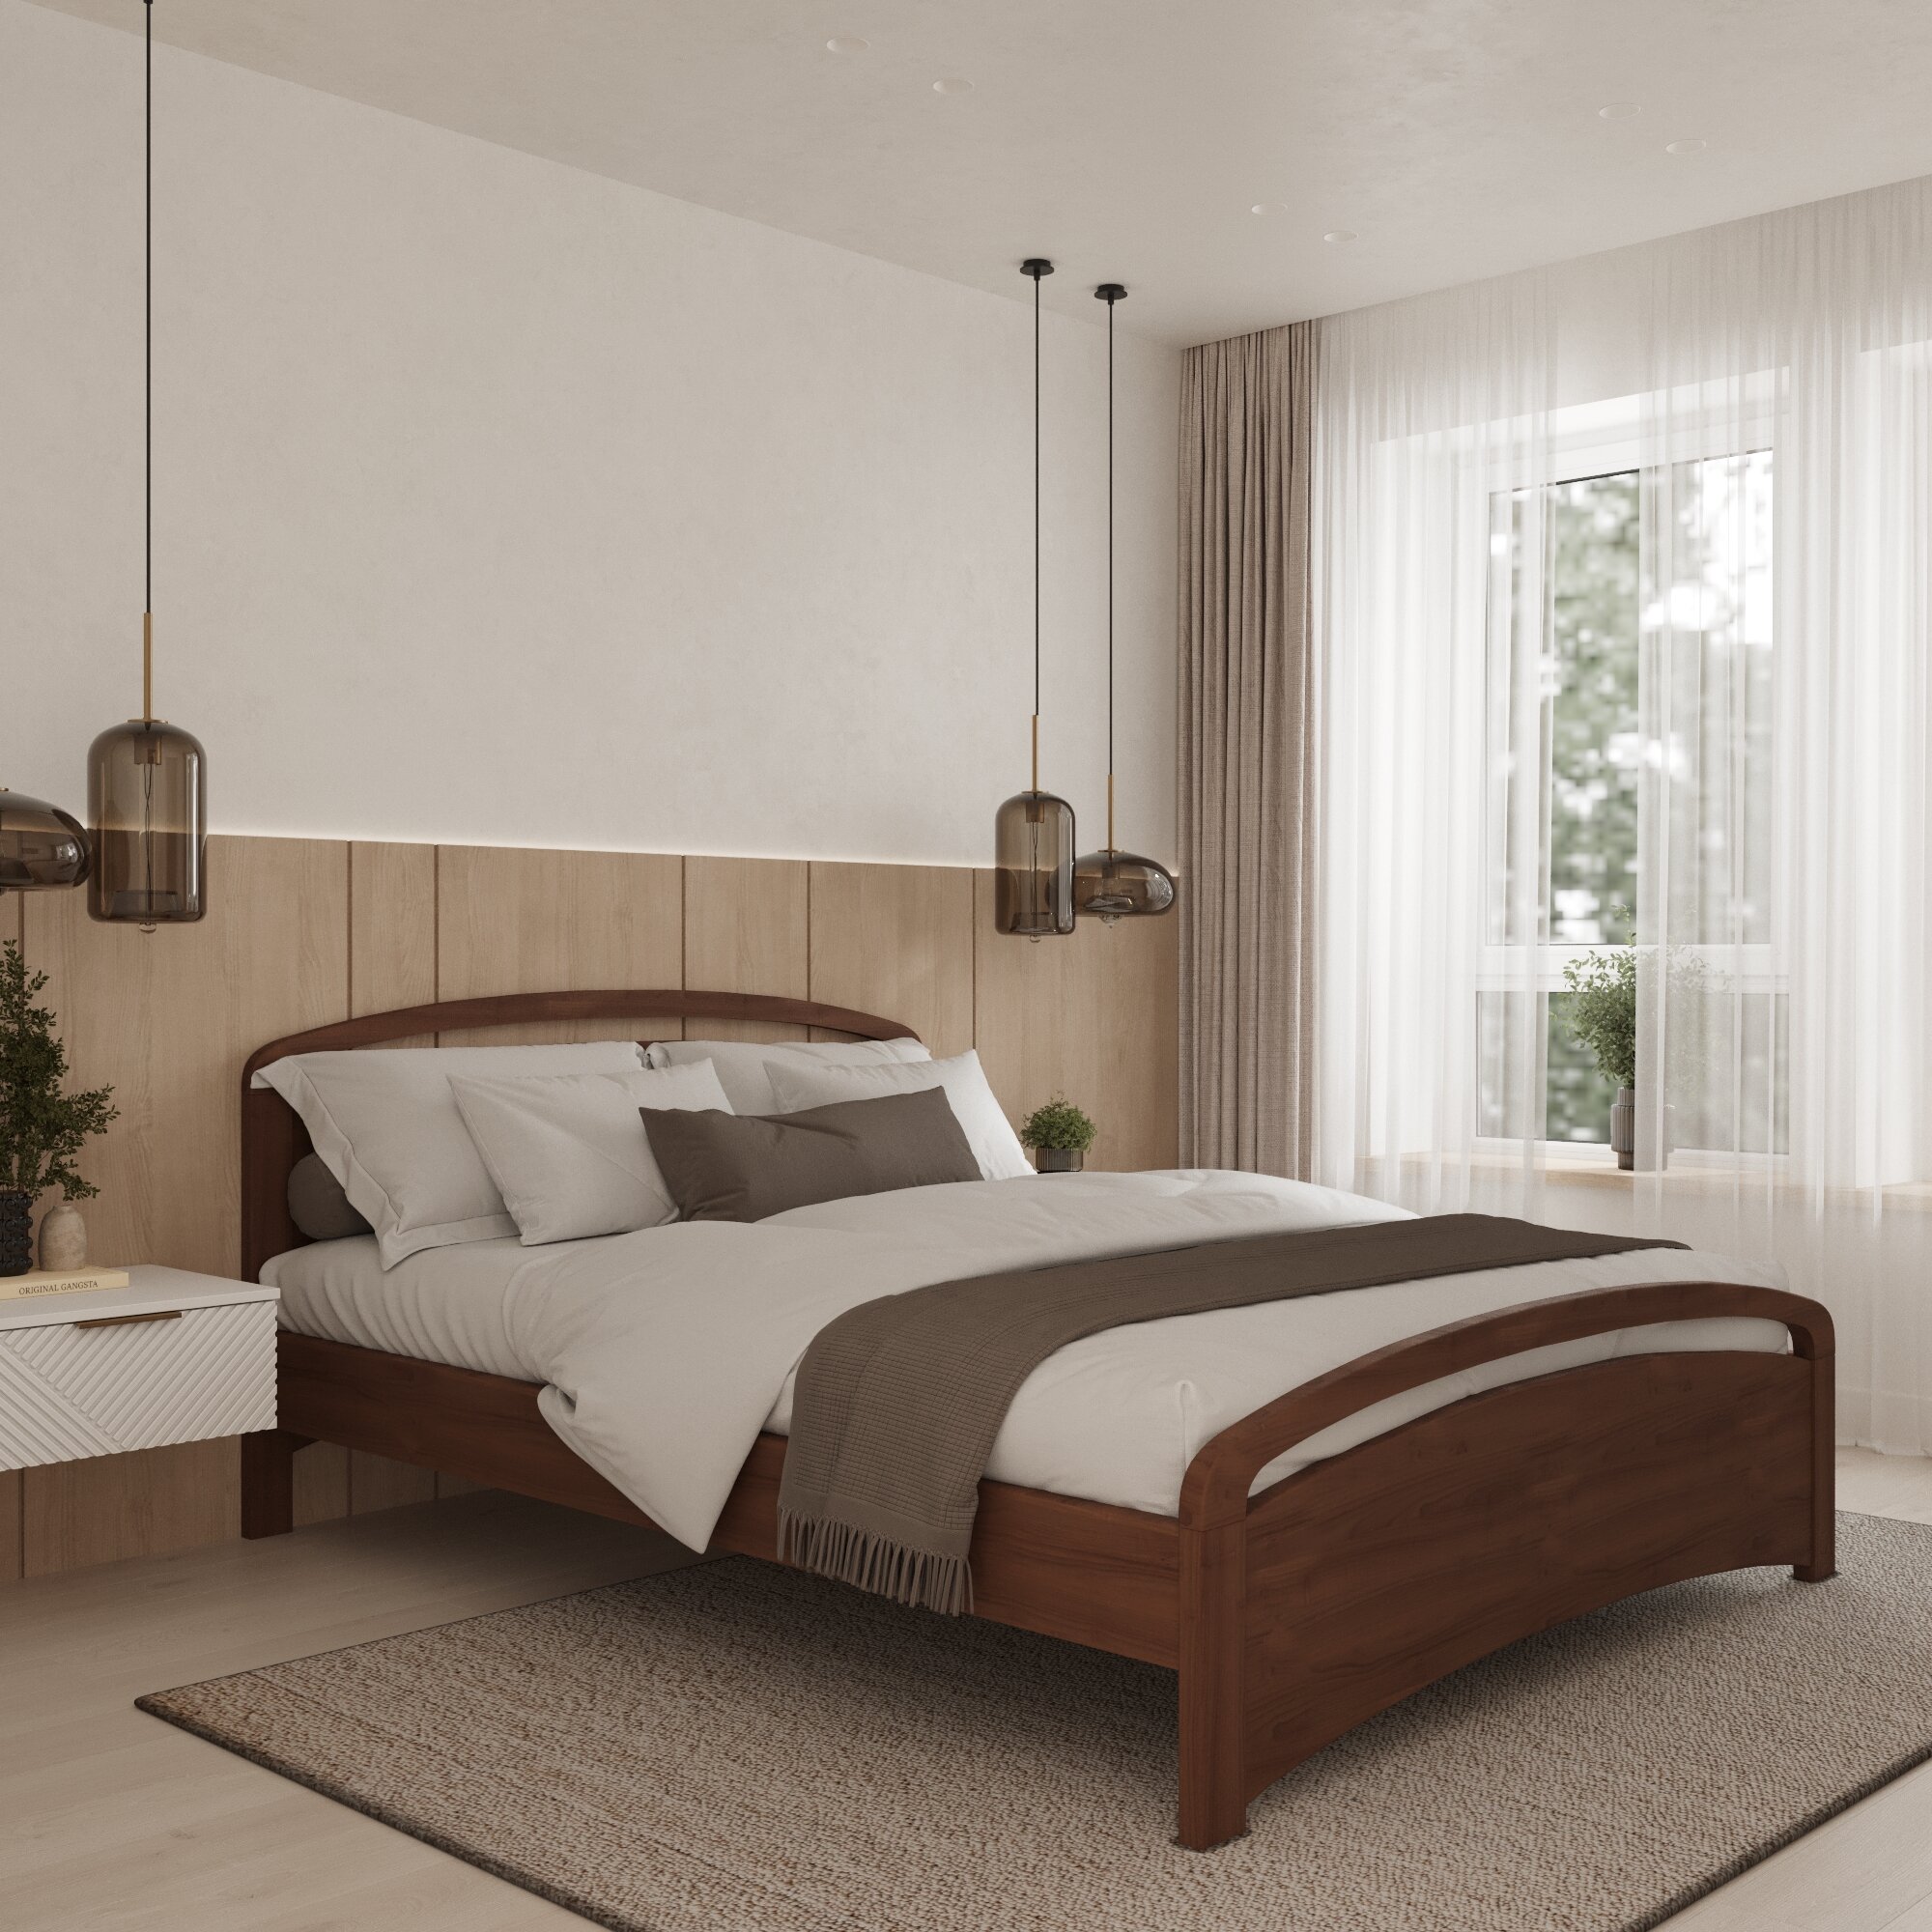 Двуспальная кровать Кровать деревянная Бали Люкс 140*200, 140х200 см, ММК-Древ